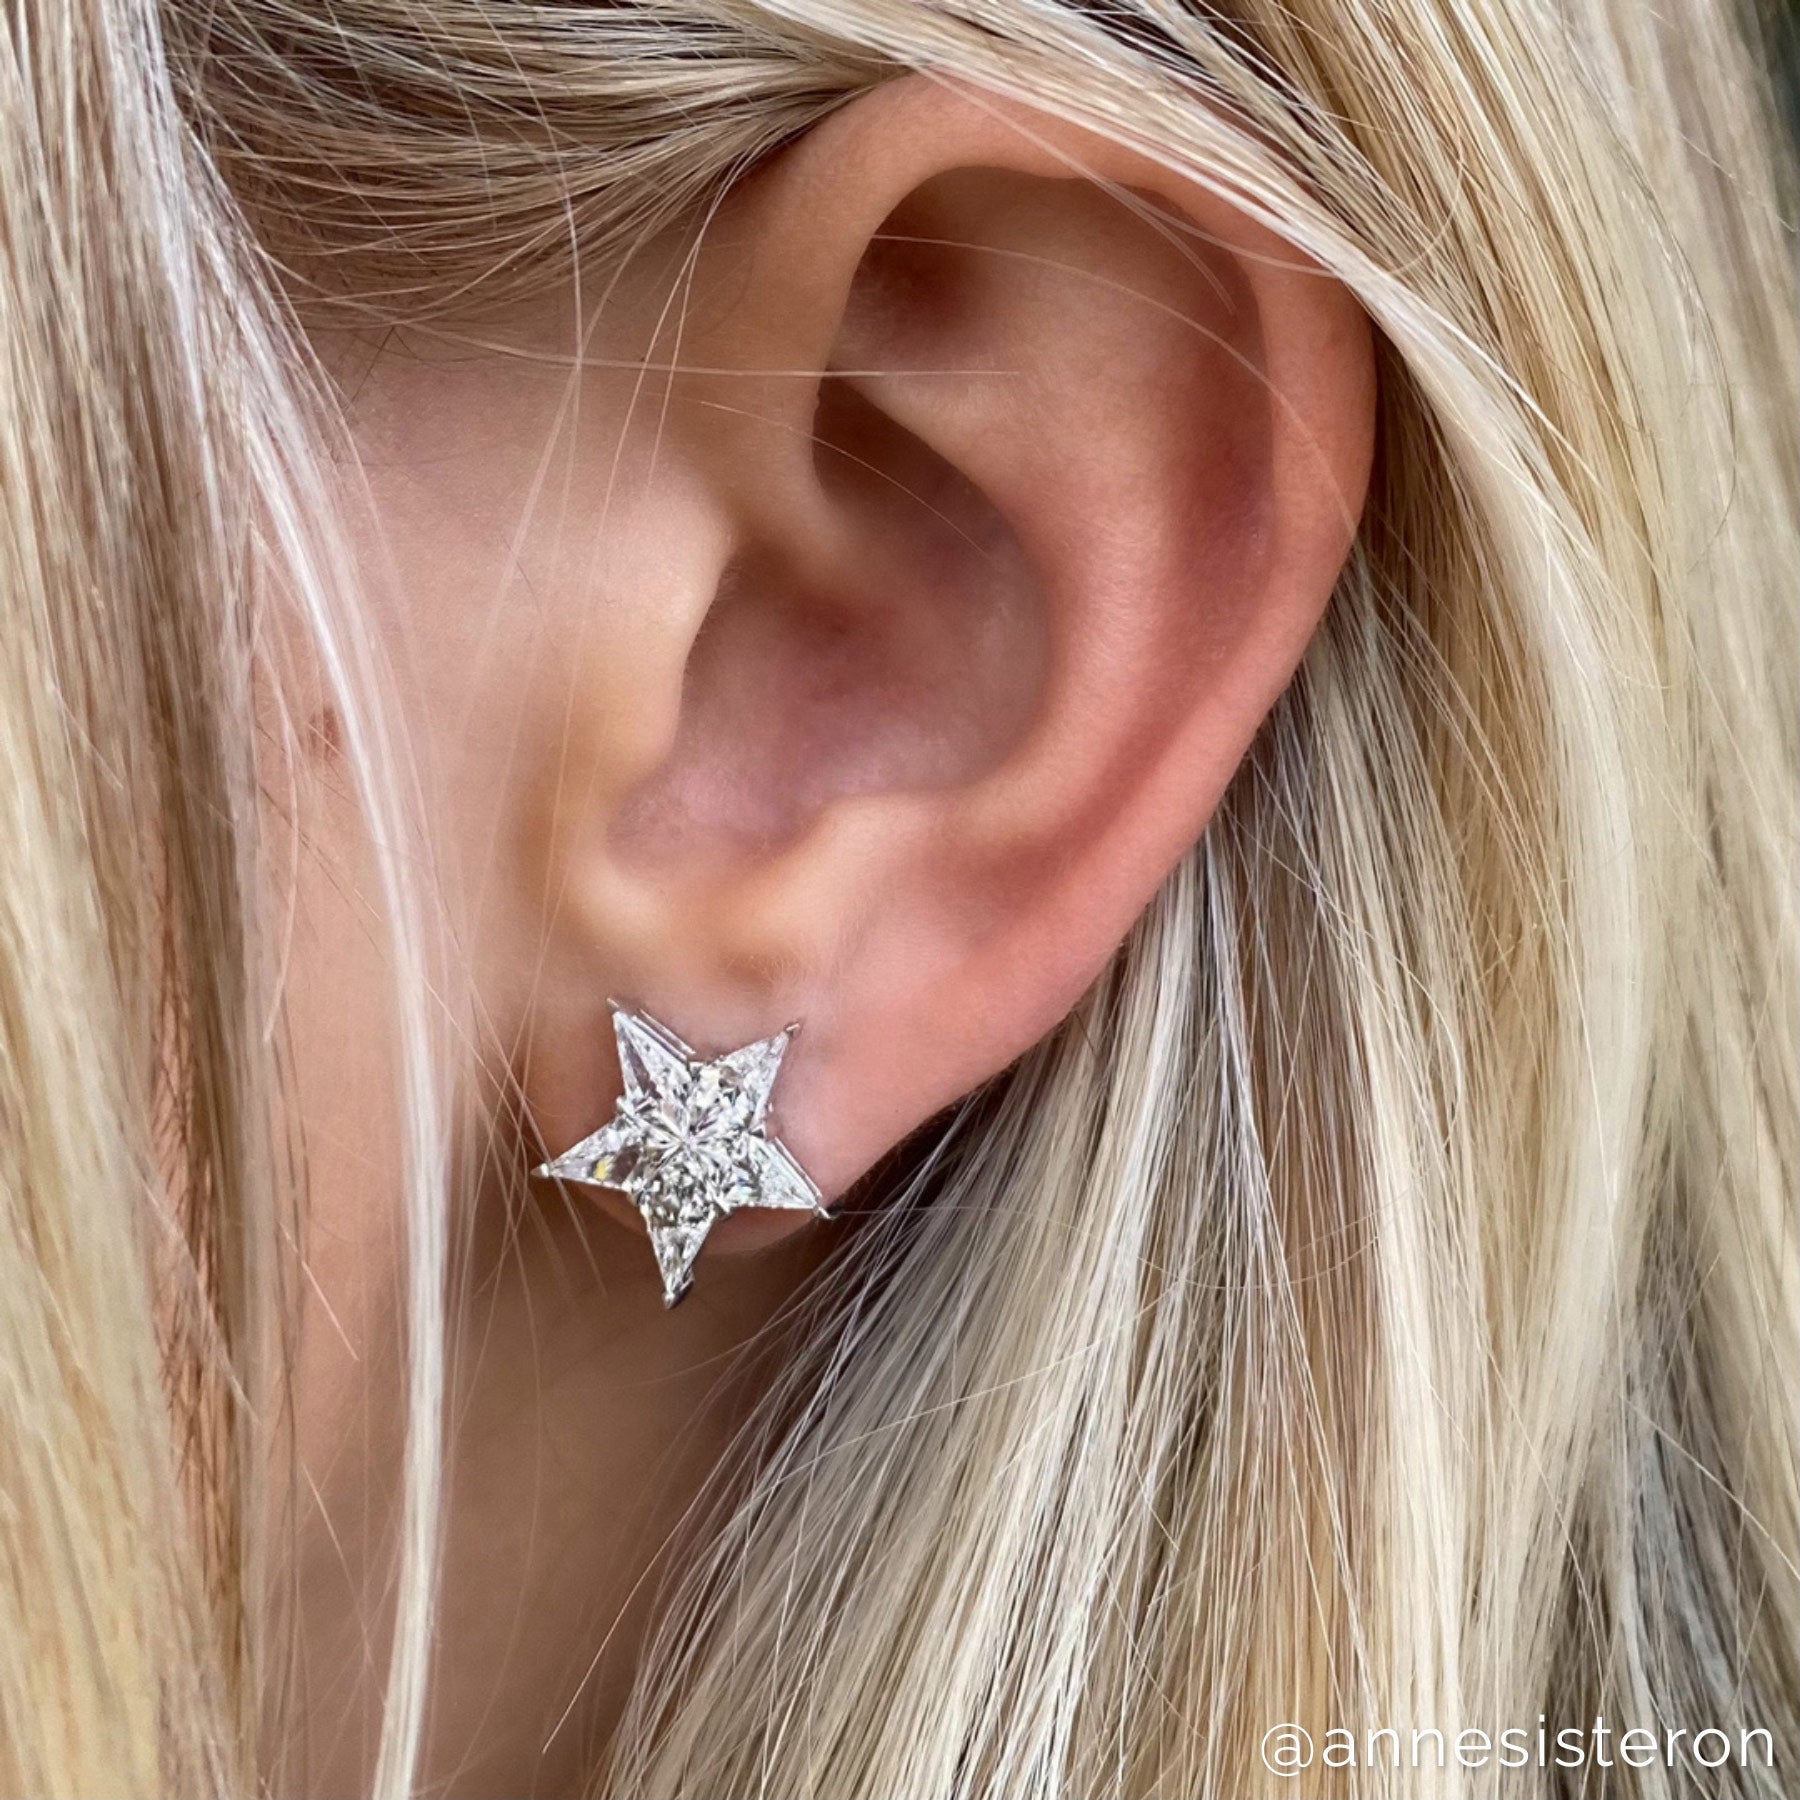 18KT White Gold Diamond Vega Star Earrings